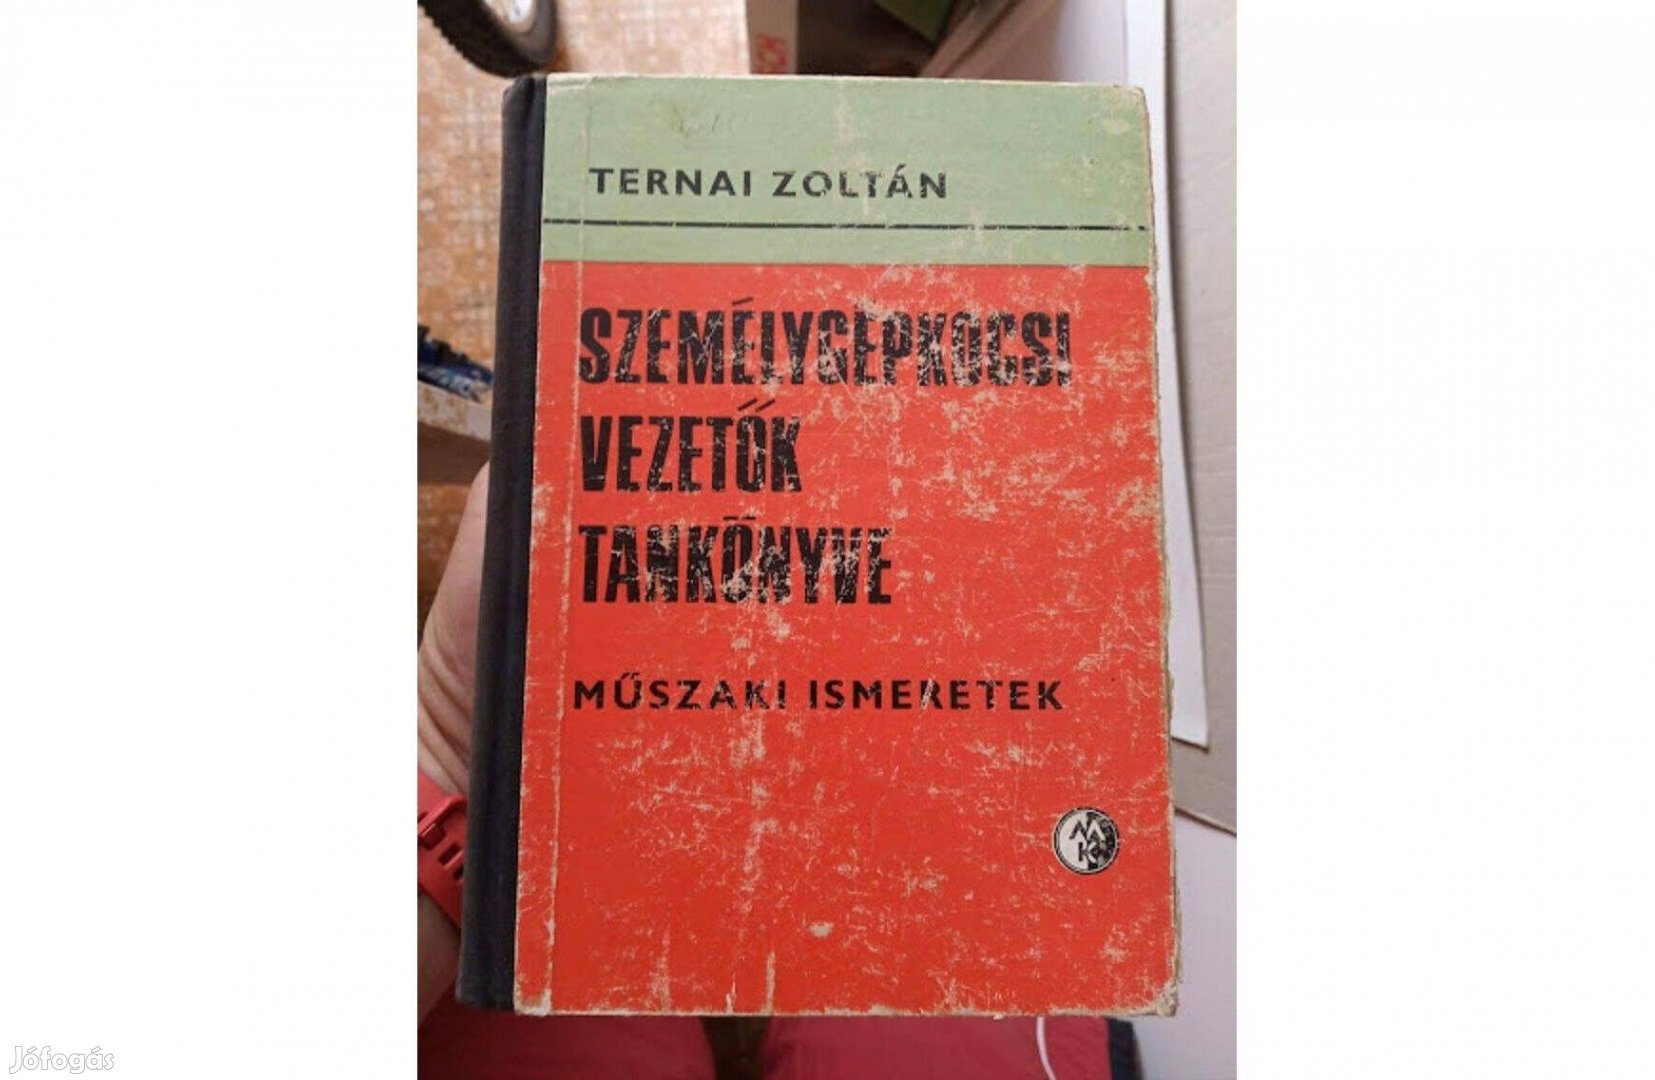 Személygépkocsi vezetők tankönyve - szerző: Ternai Zoltán (retró)